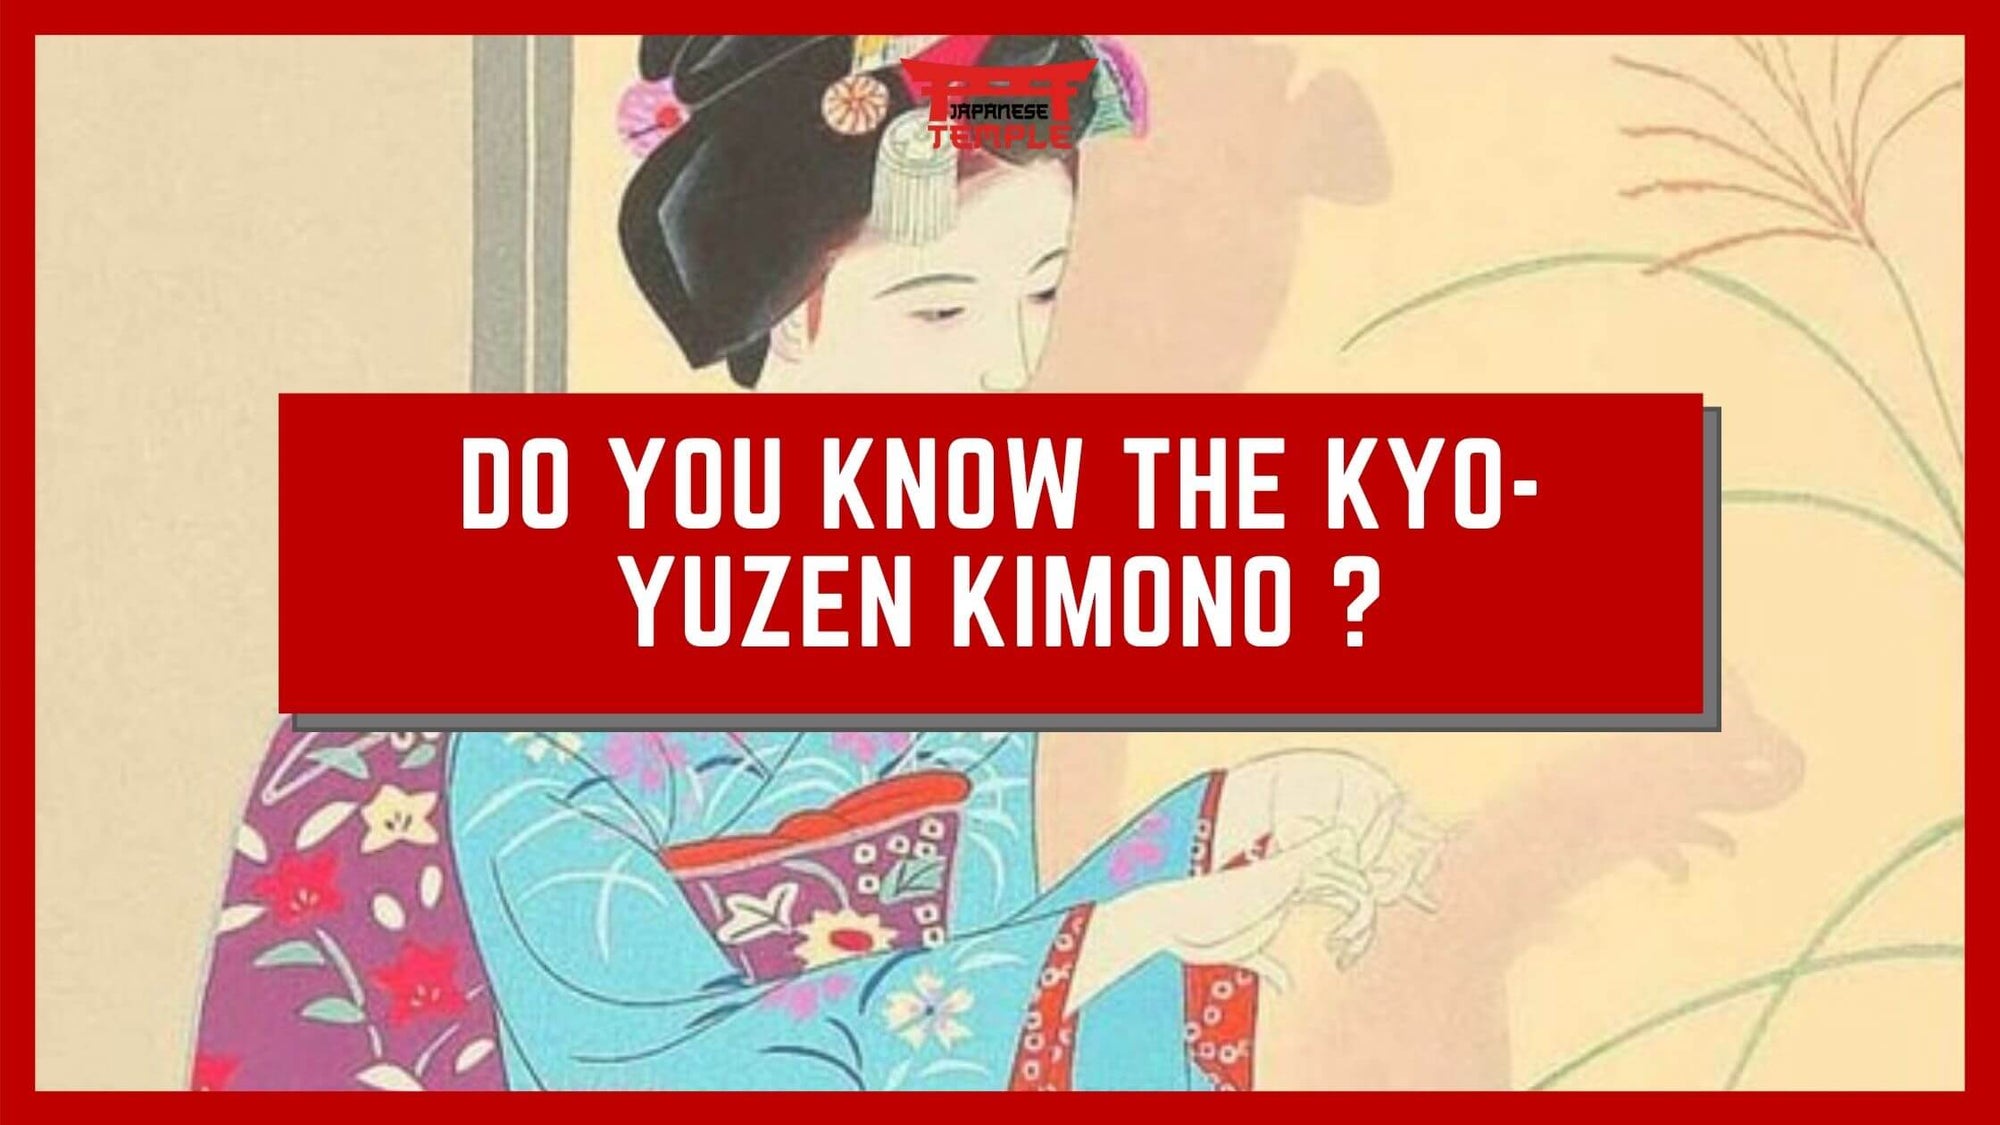 Kyo-yuzen kimono